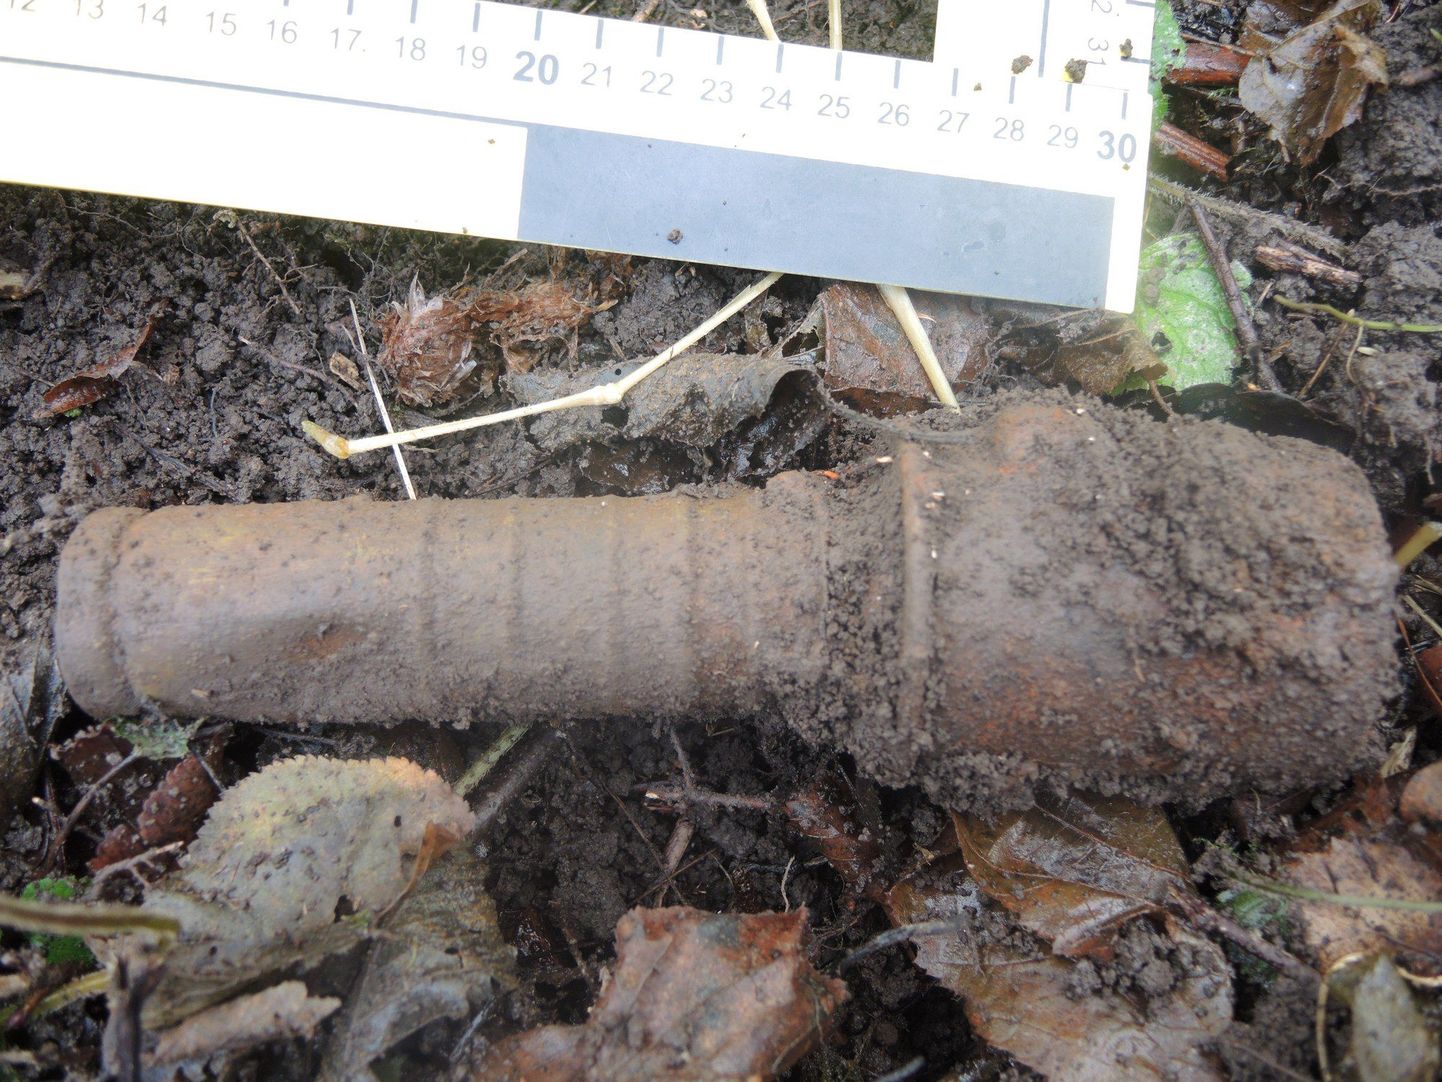 Emajõe ääres asuvast Kardla külast leitud käsigranaat.